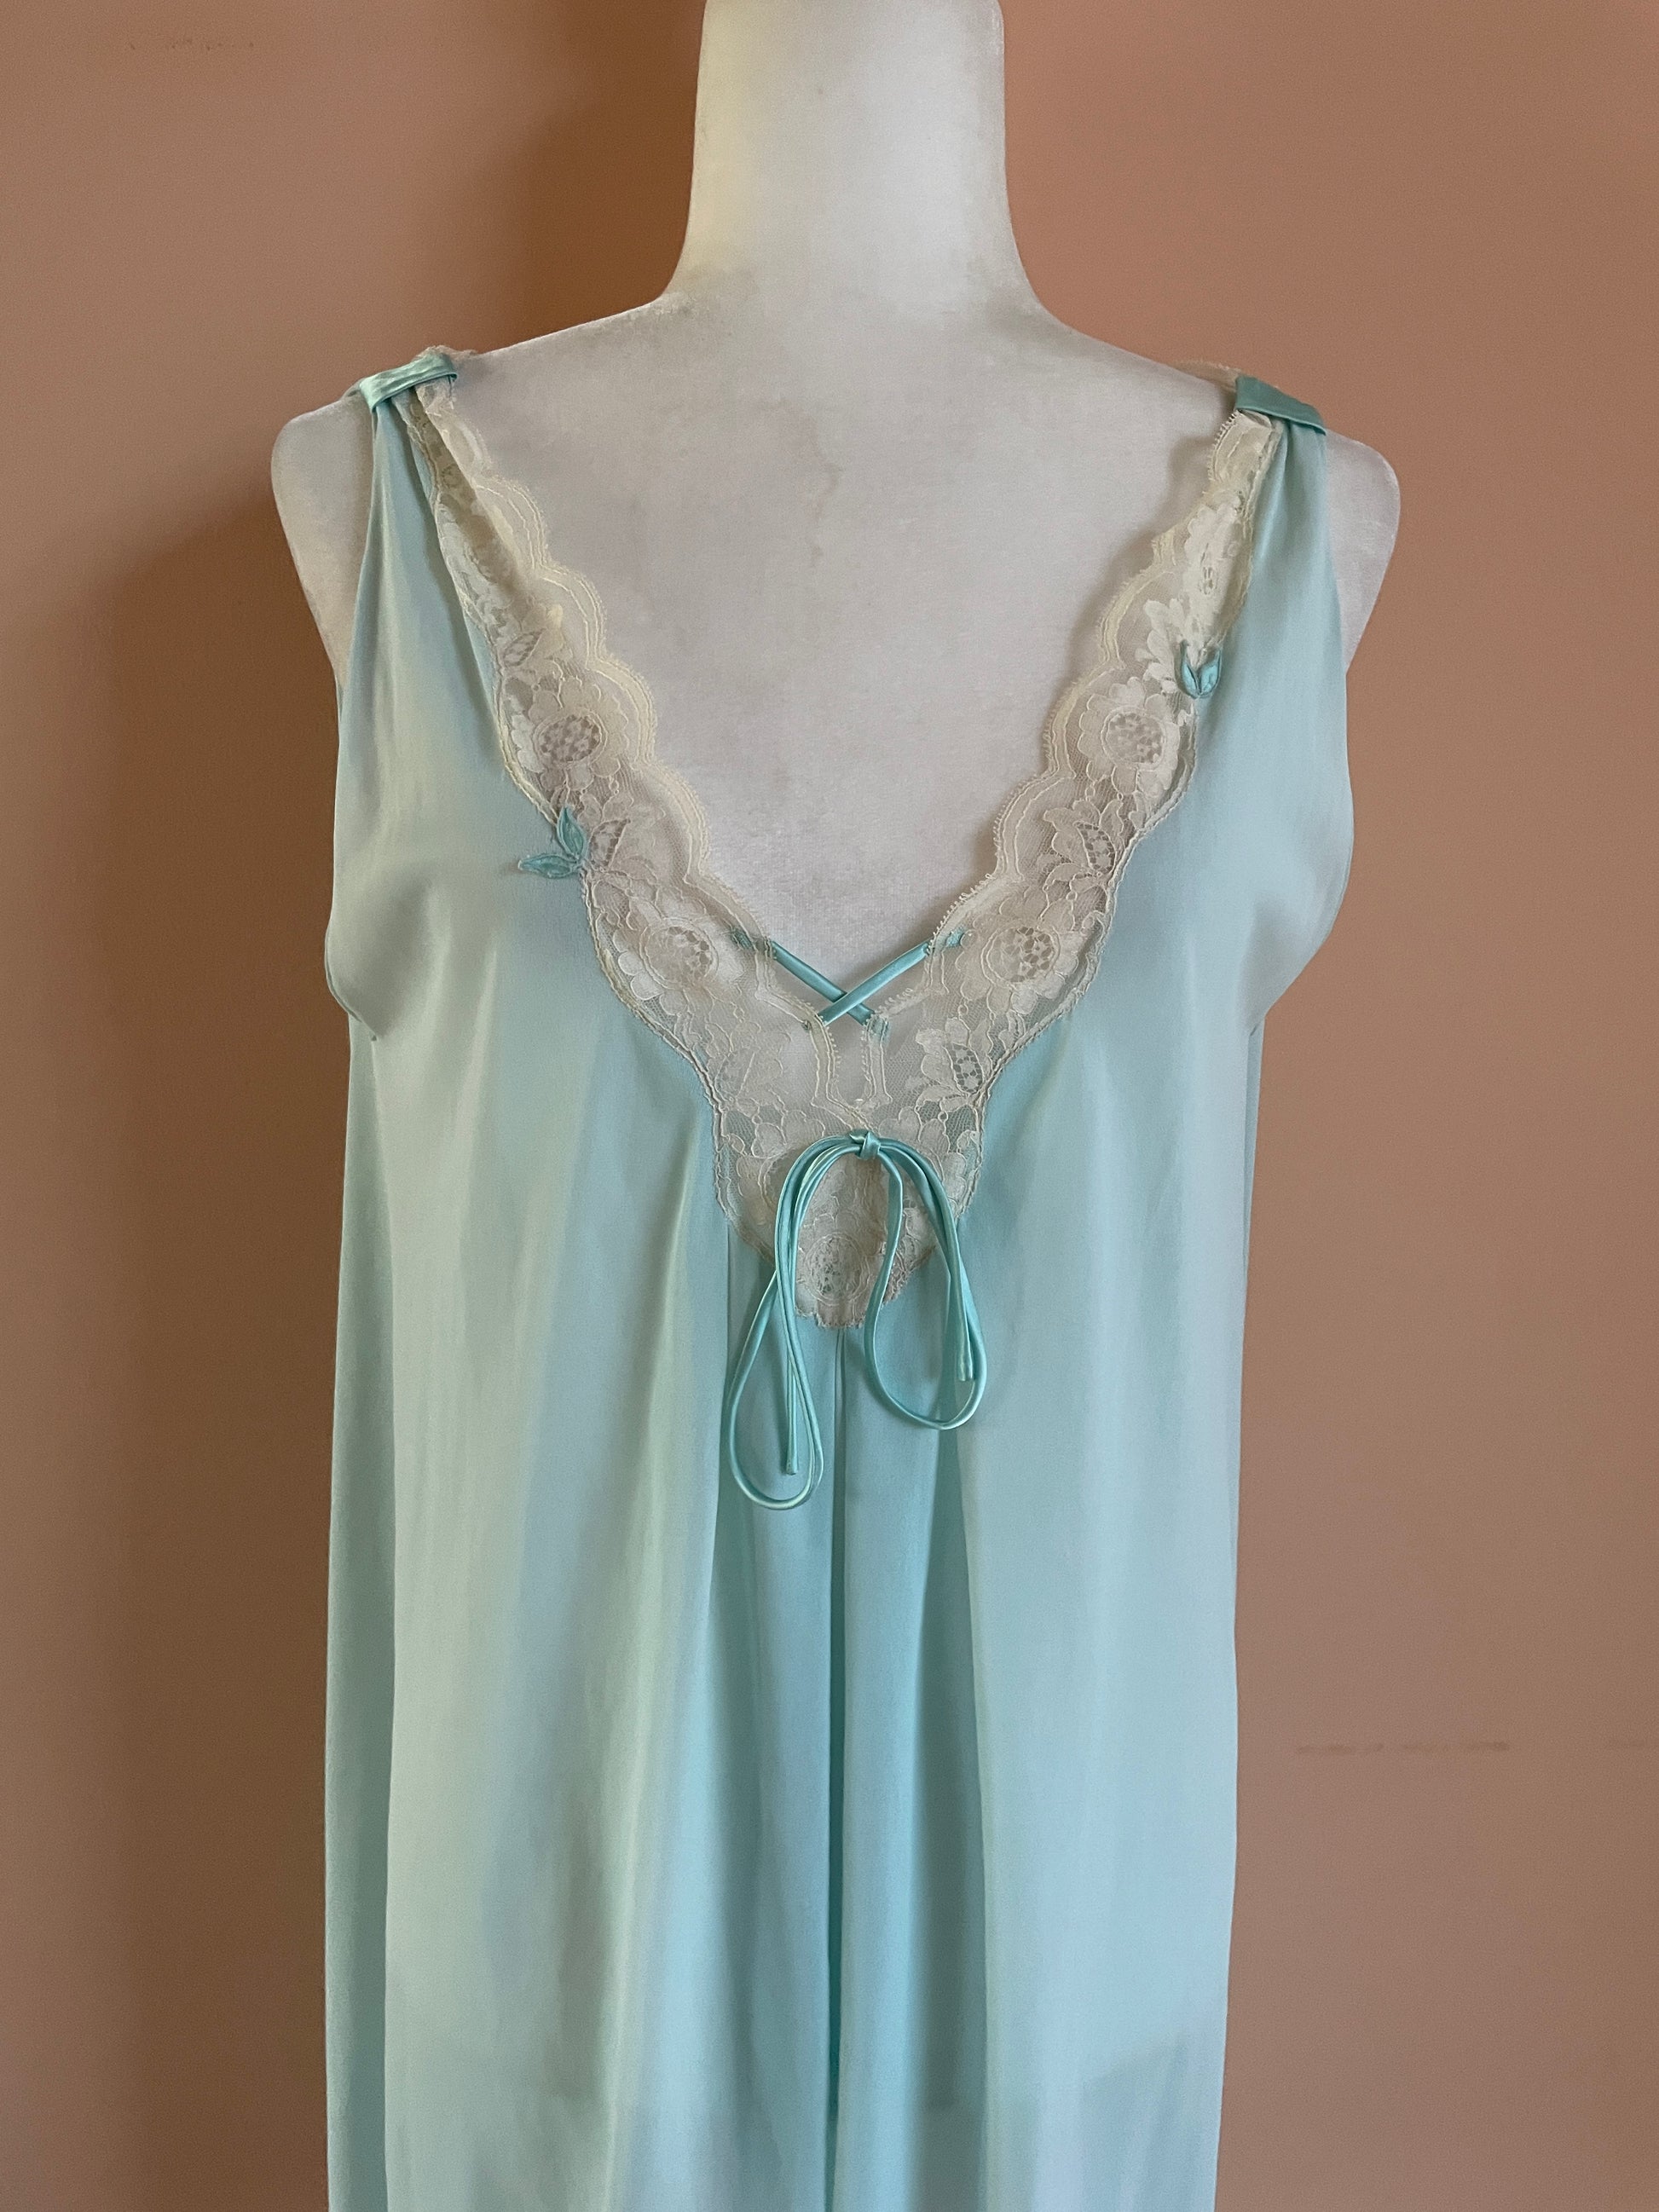  80s Vintage Blue Lacy Lingerie Nightgown M